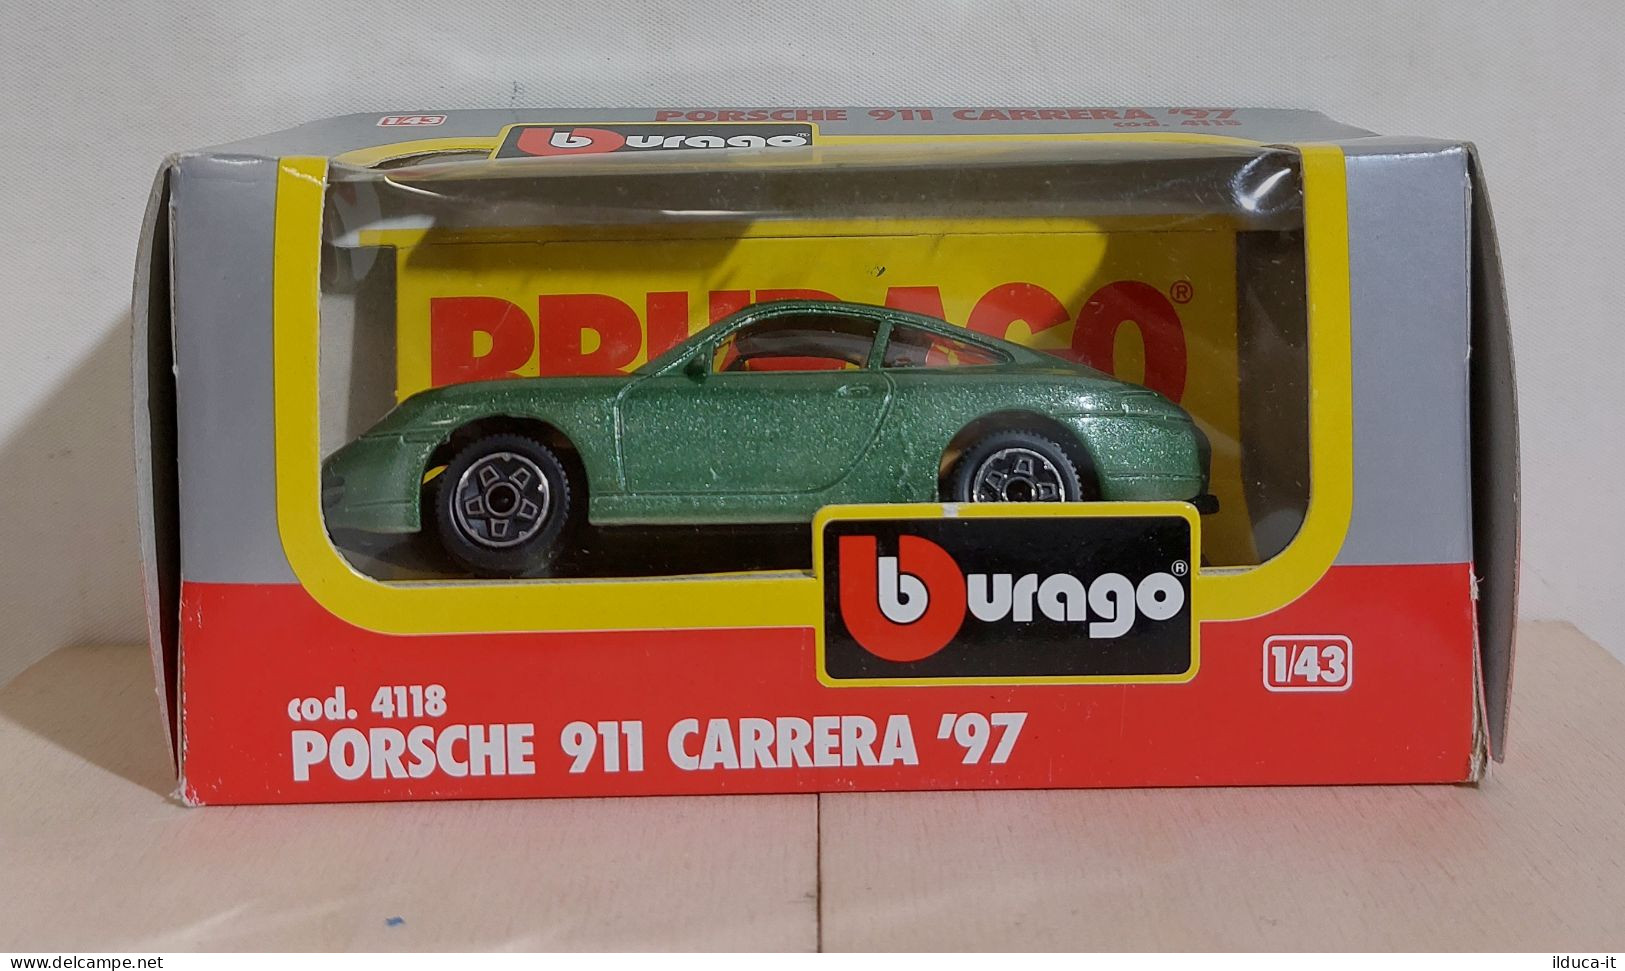 I115935 BURAGO 1/43 N. 4118 - Porsche 911 Carrera '97 - Box - Burago